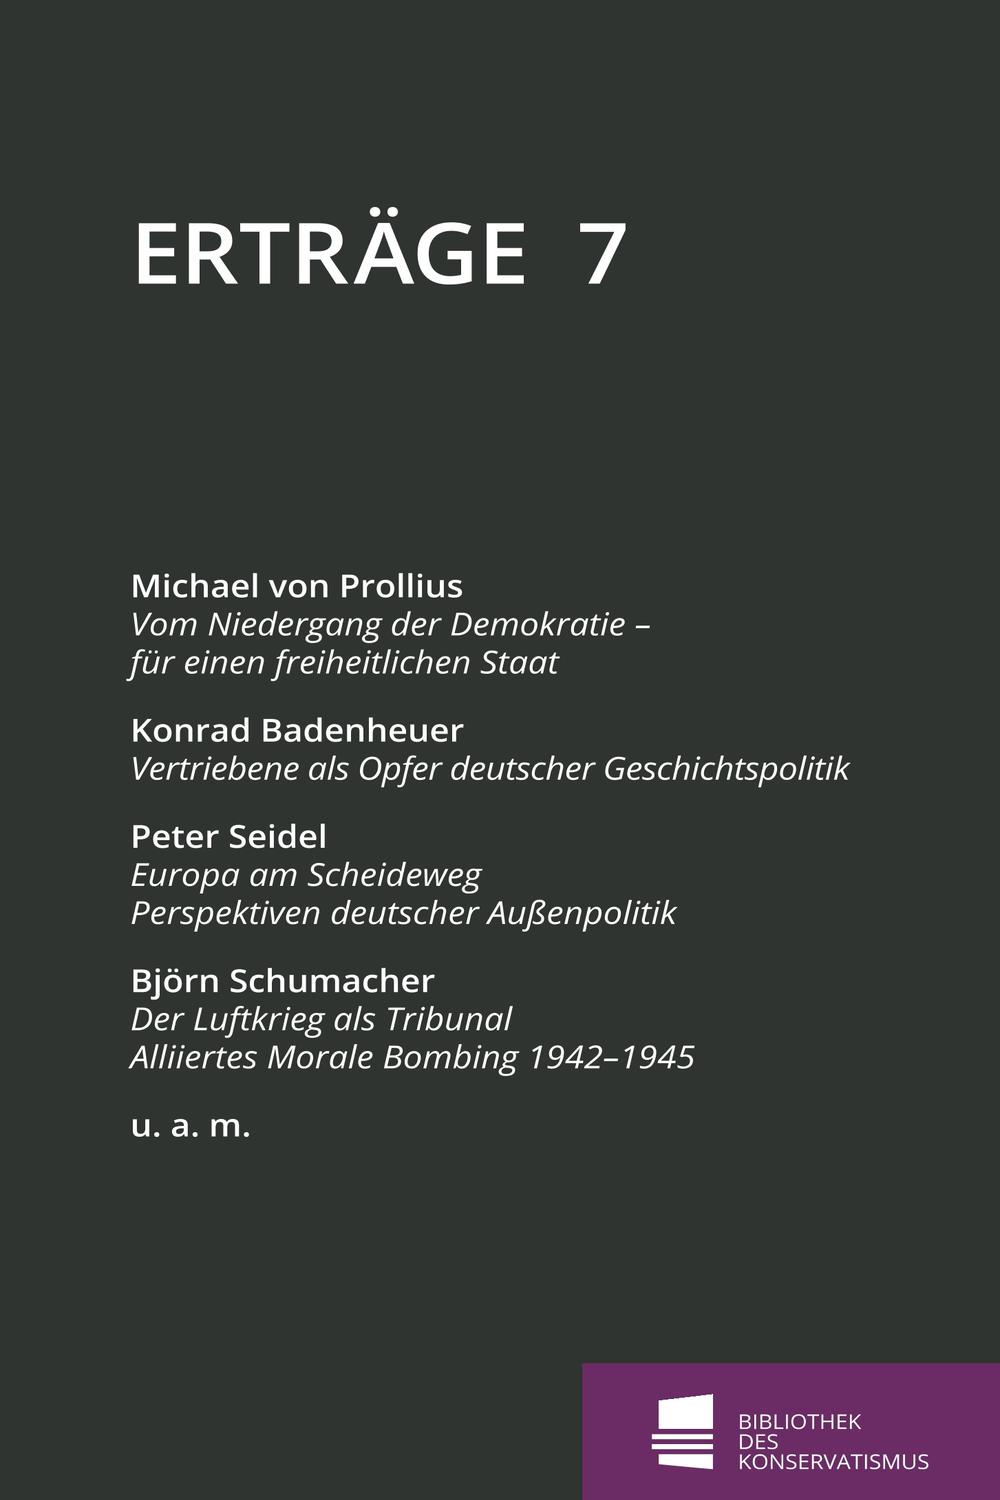 Erträge - Michael von Prollius, Konrad Badenheuer, Albrecht Jebens, Peter Seidel, Björn Schumacher, Rainer Waßner